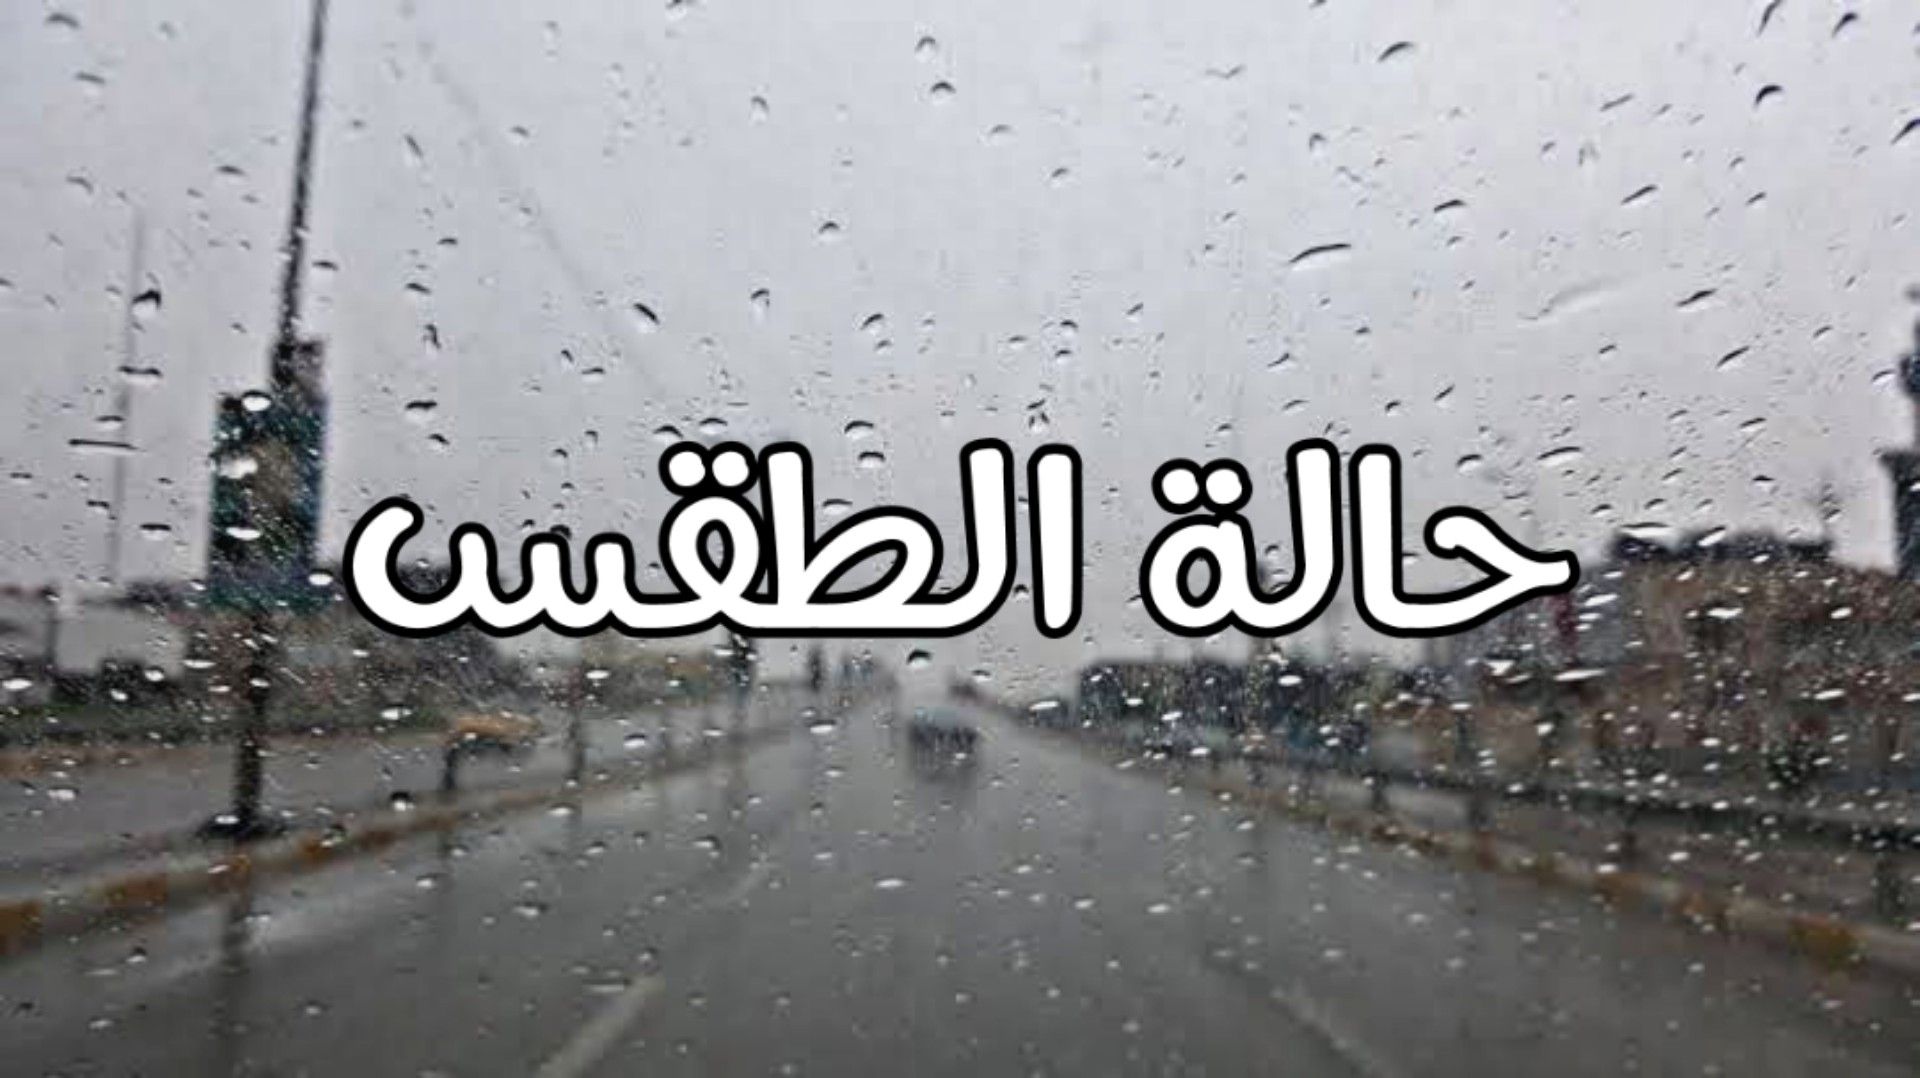 الأرصاد الجوية وطقس الغد في مصر تحذيرات بشأن التقلبات الجوية والأمطار